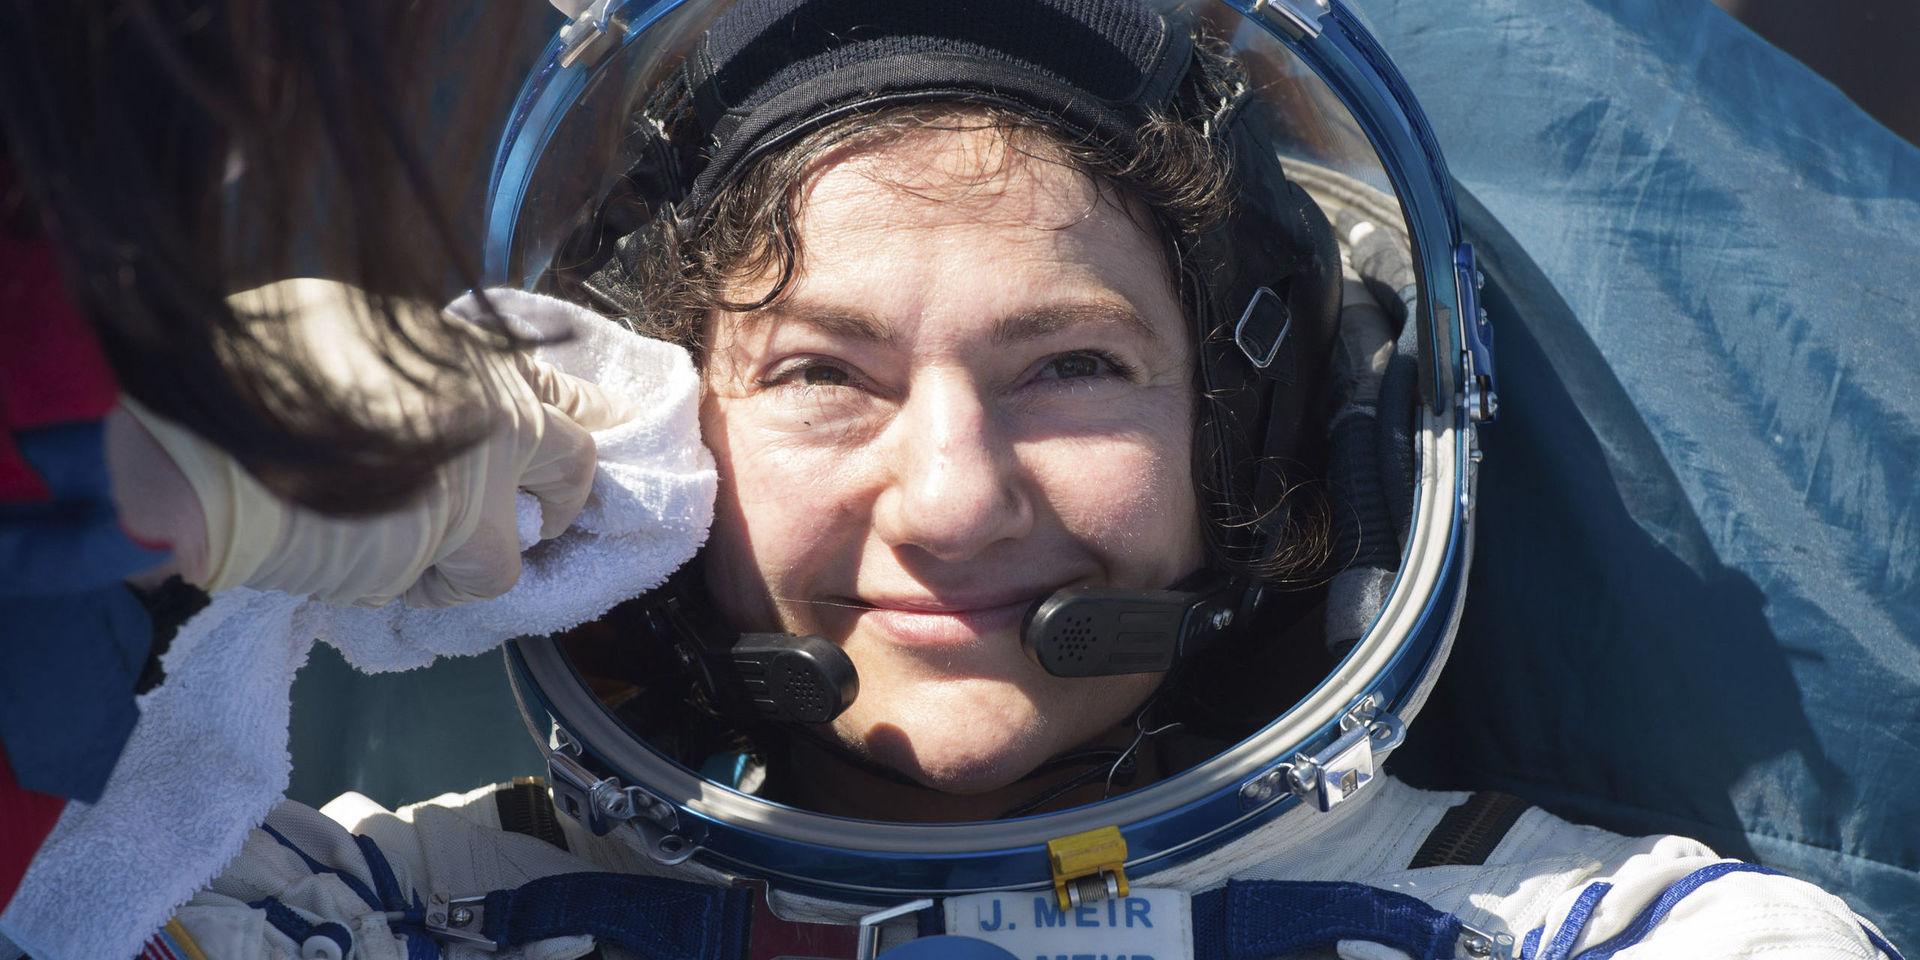 Jessica Meir undersöks av läkare på plats efter att ha landat i Kazakstan, efter över 200 dygn i rymden. Astronauterna möttes av fint väder med klar himmel och 16 grader i luften.